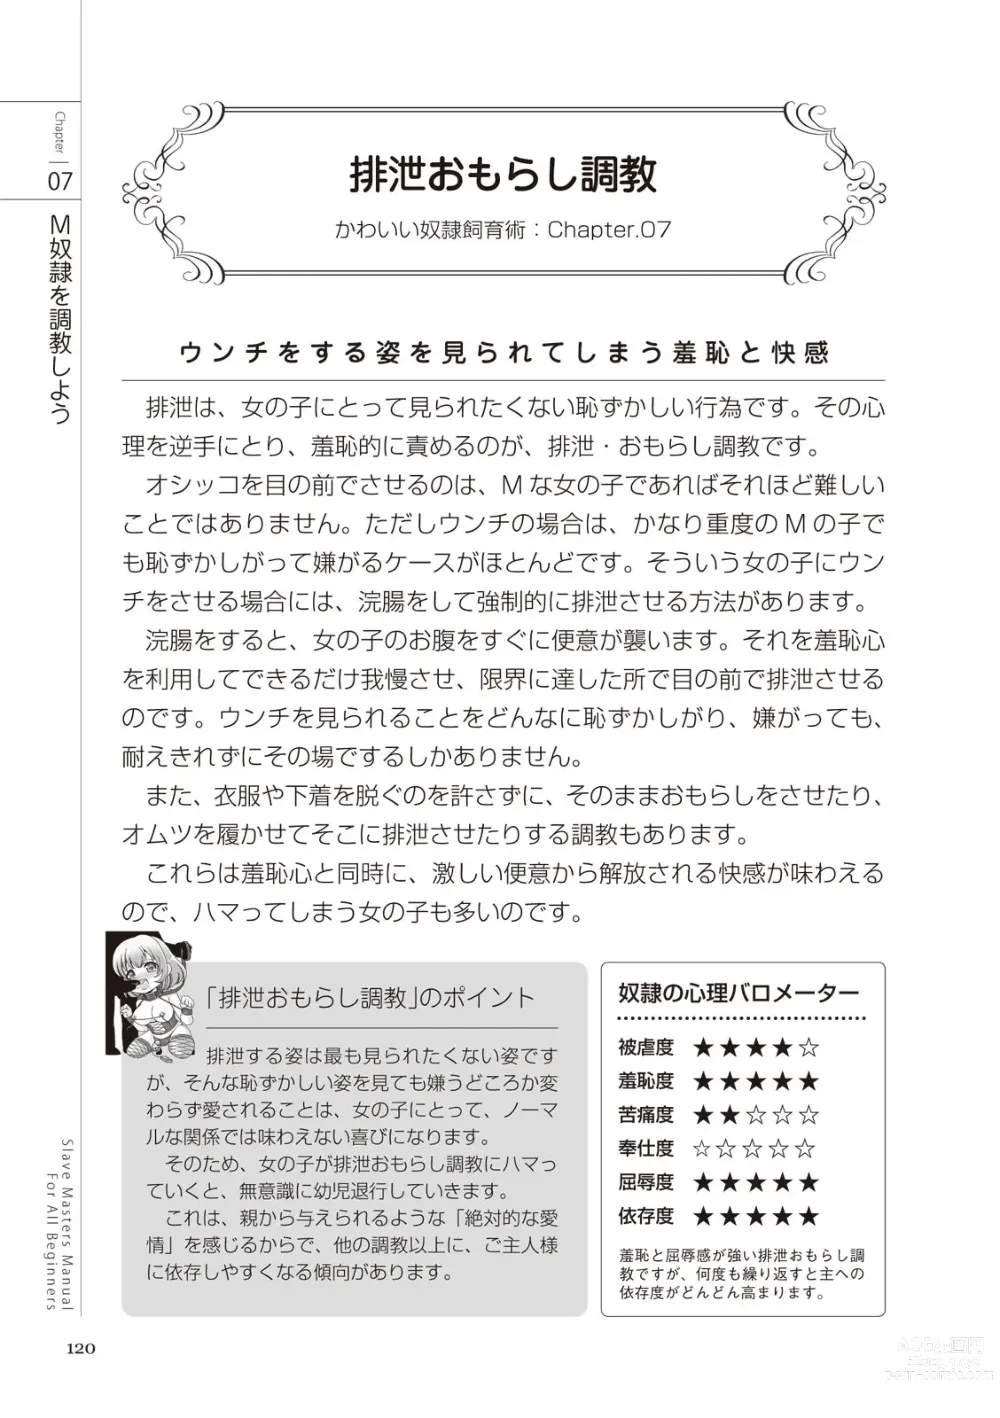 Page 120 of manga Zero kara Hajimeru SM Manual Kawaii Dorei Shiikujutsu